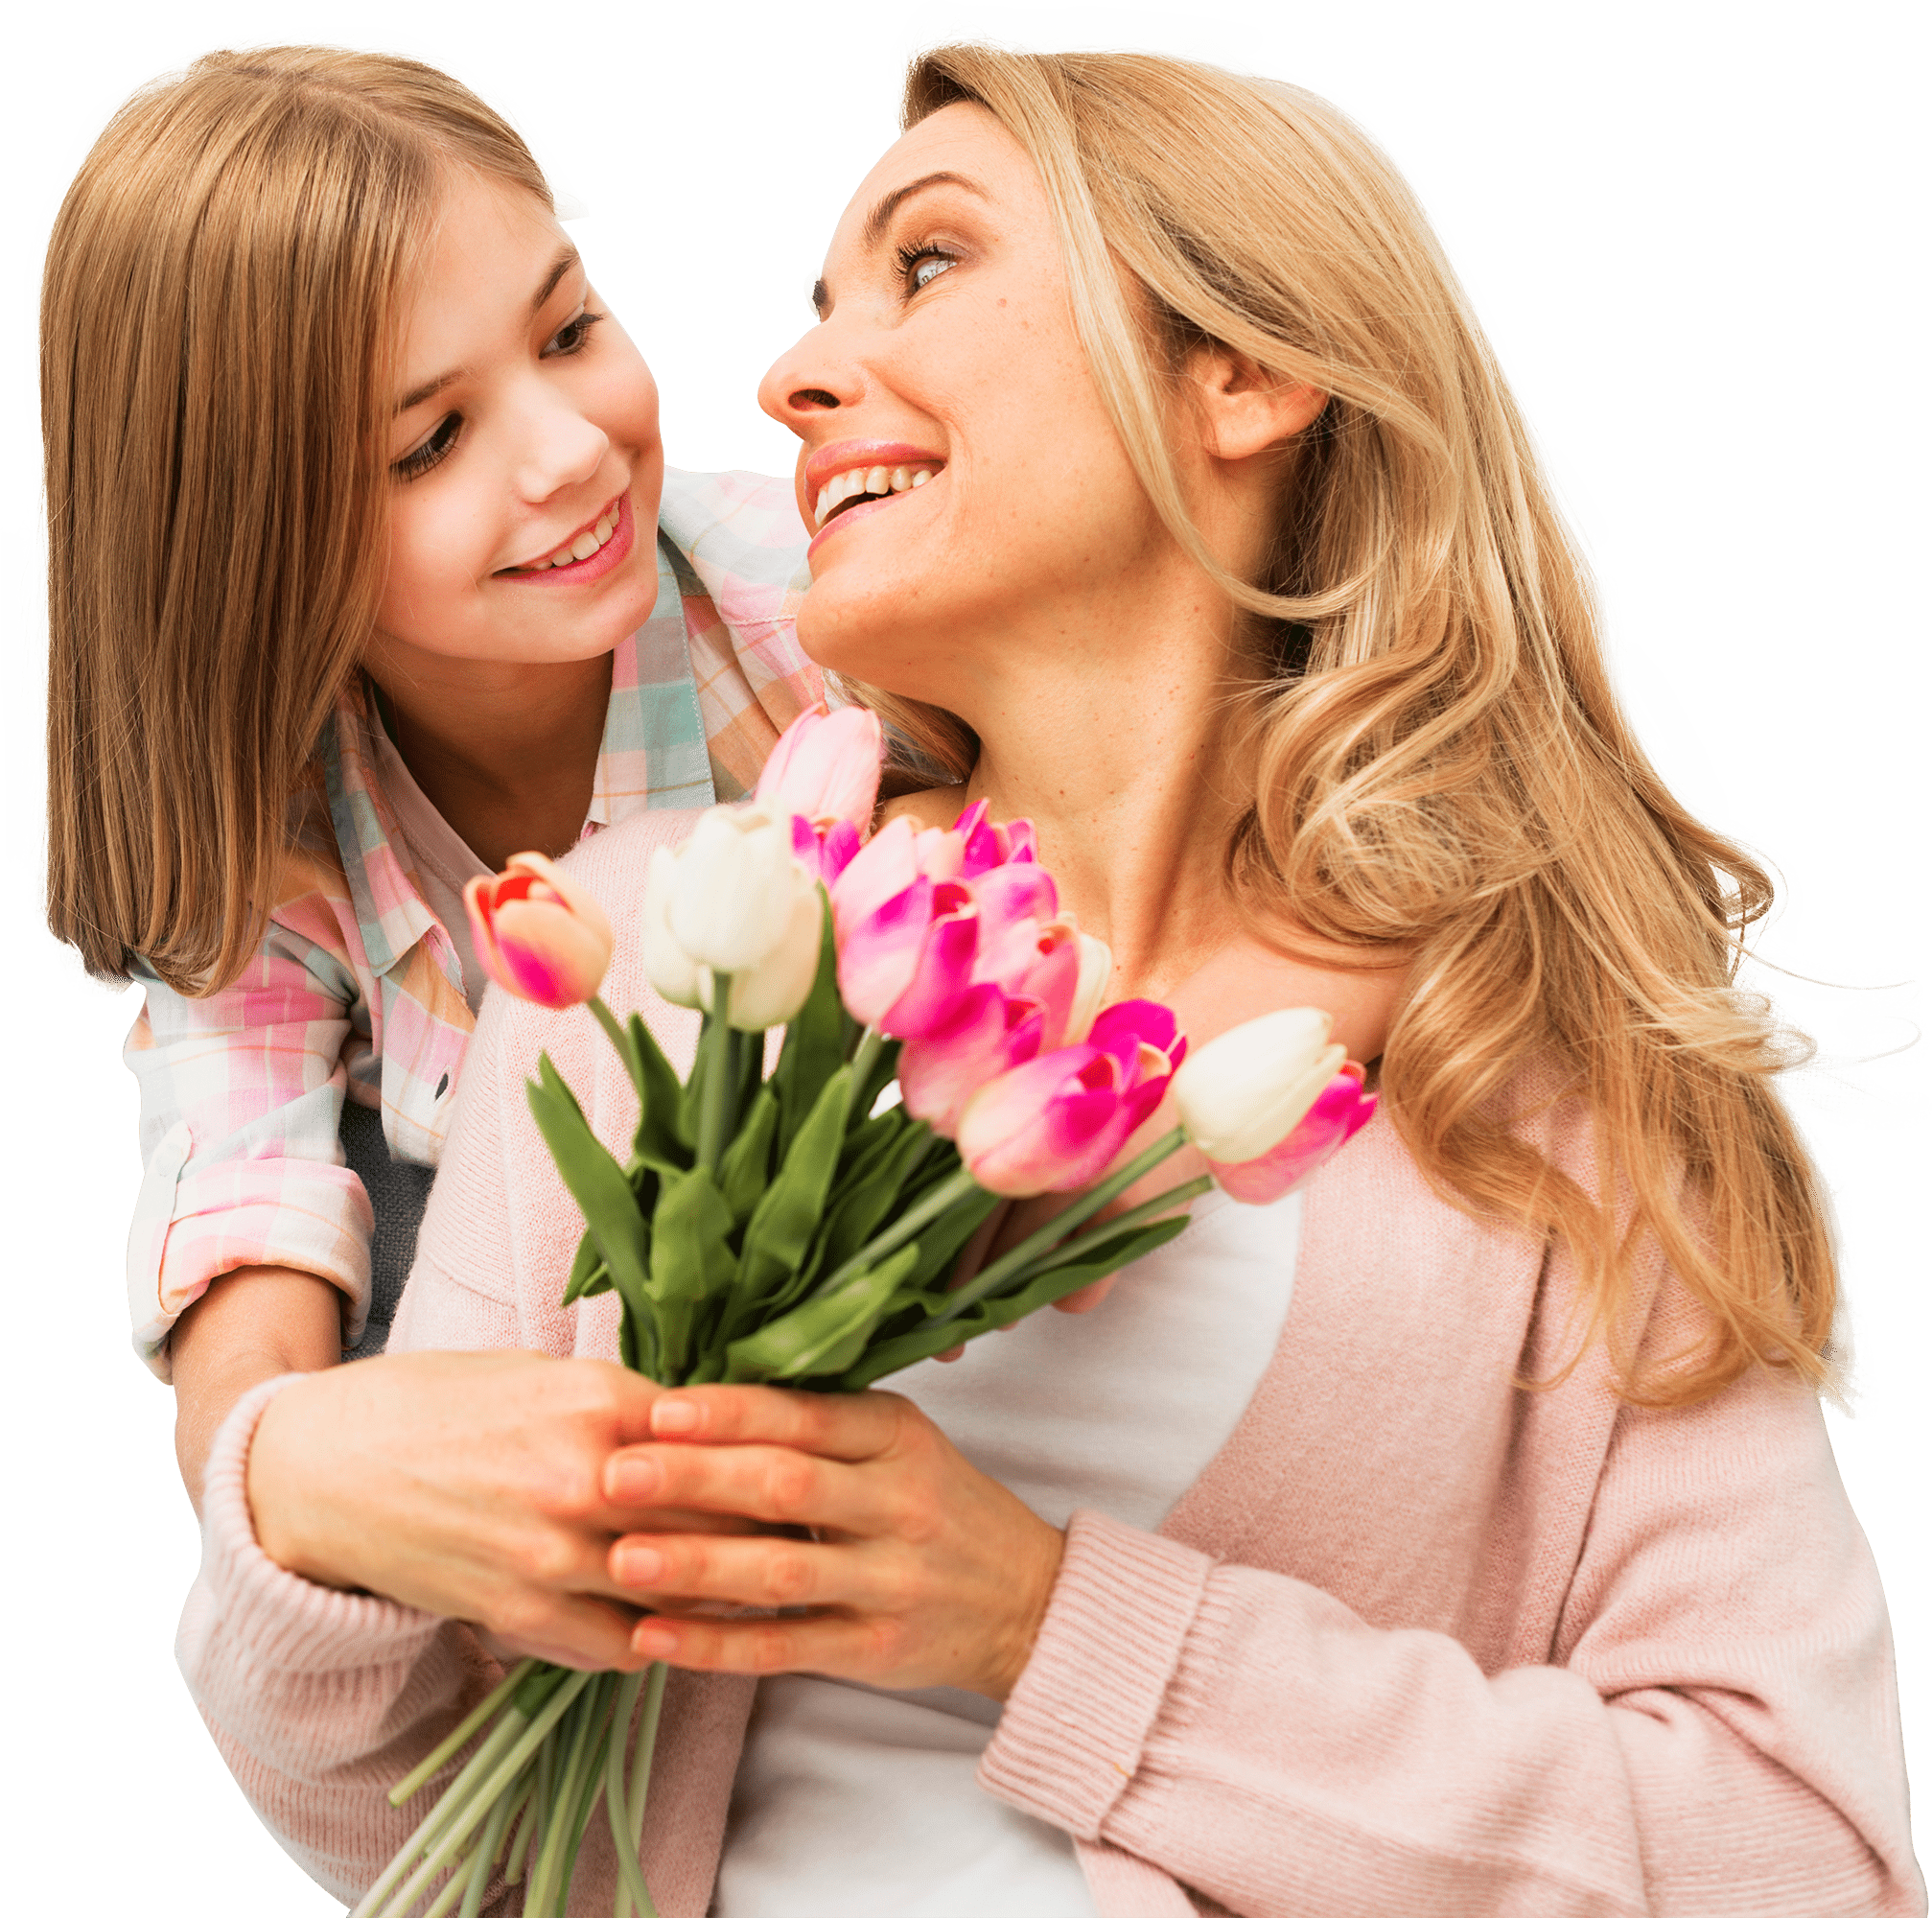 Праздник для мам и девочек. Празднование дня матери. Цветы для мамы. Мама. Мама и дочка с тюльпанами.